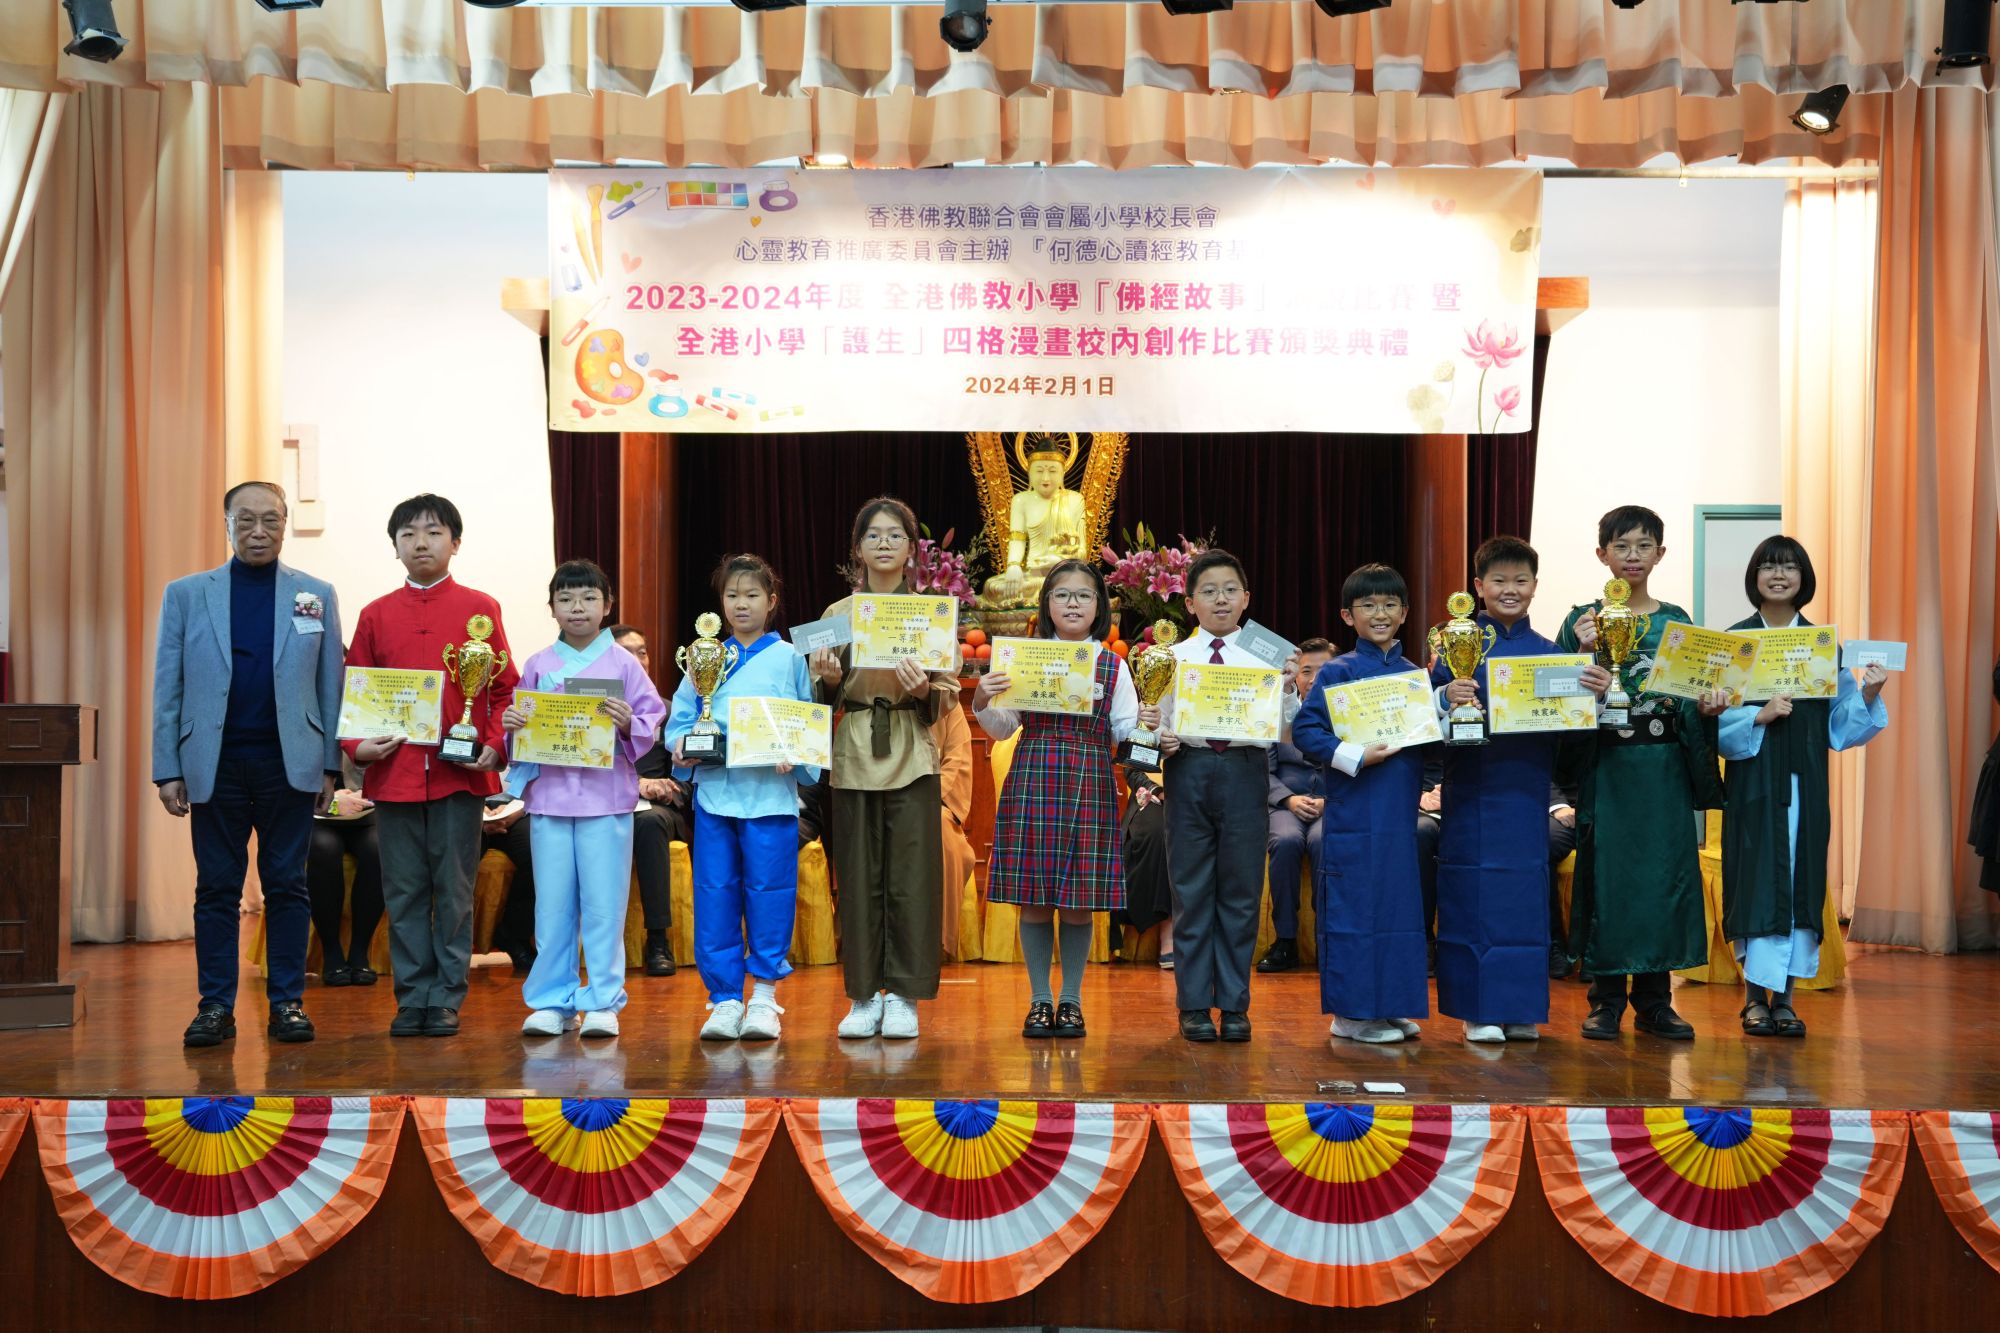 何德心居士向五間學校的參賽隊伍頒發「佛經故事」演說比賽一等獎